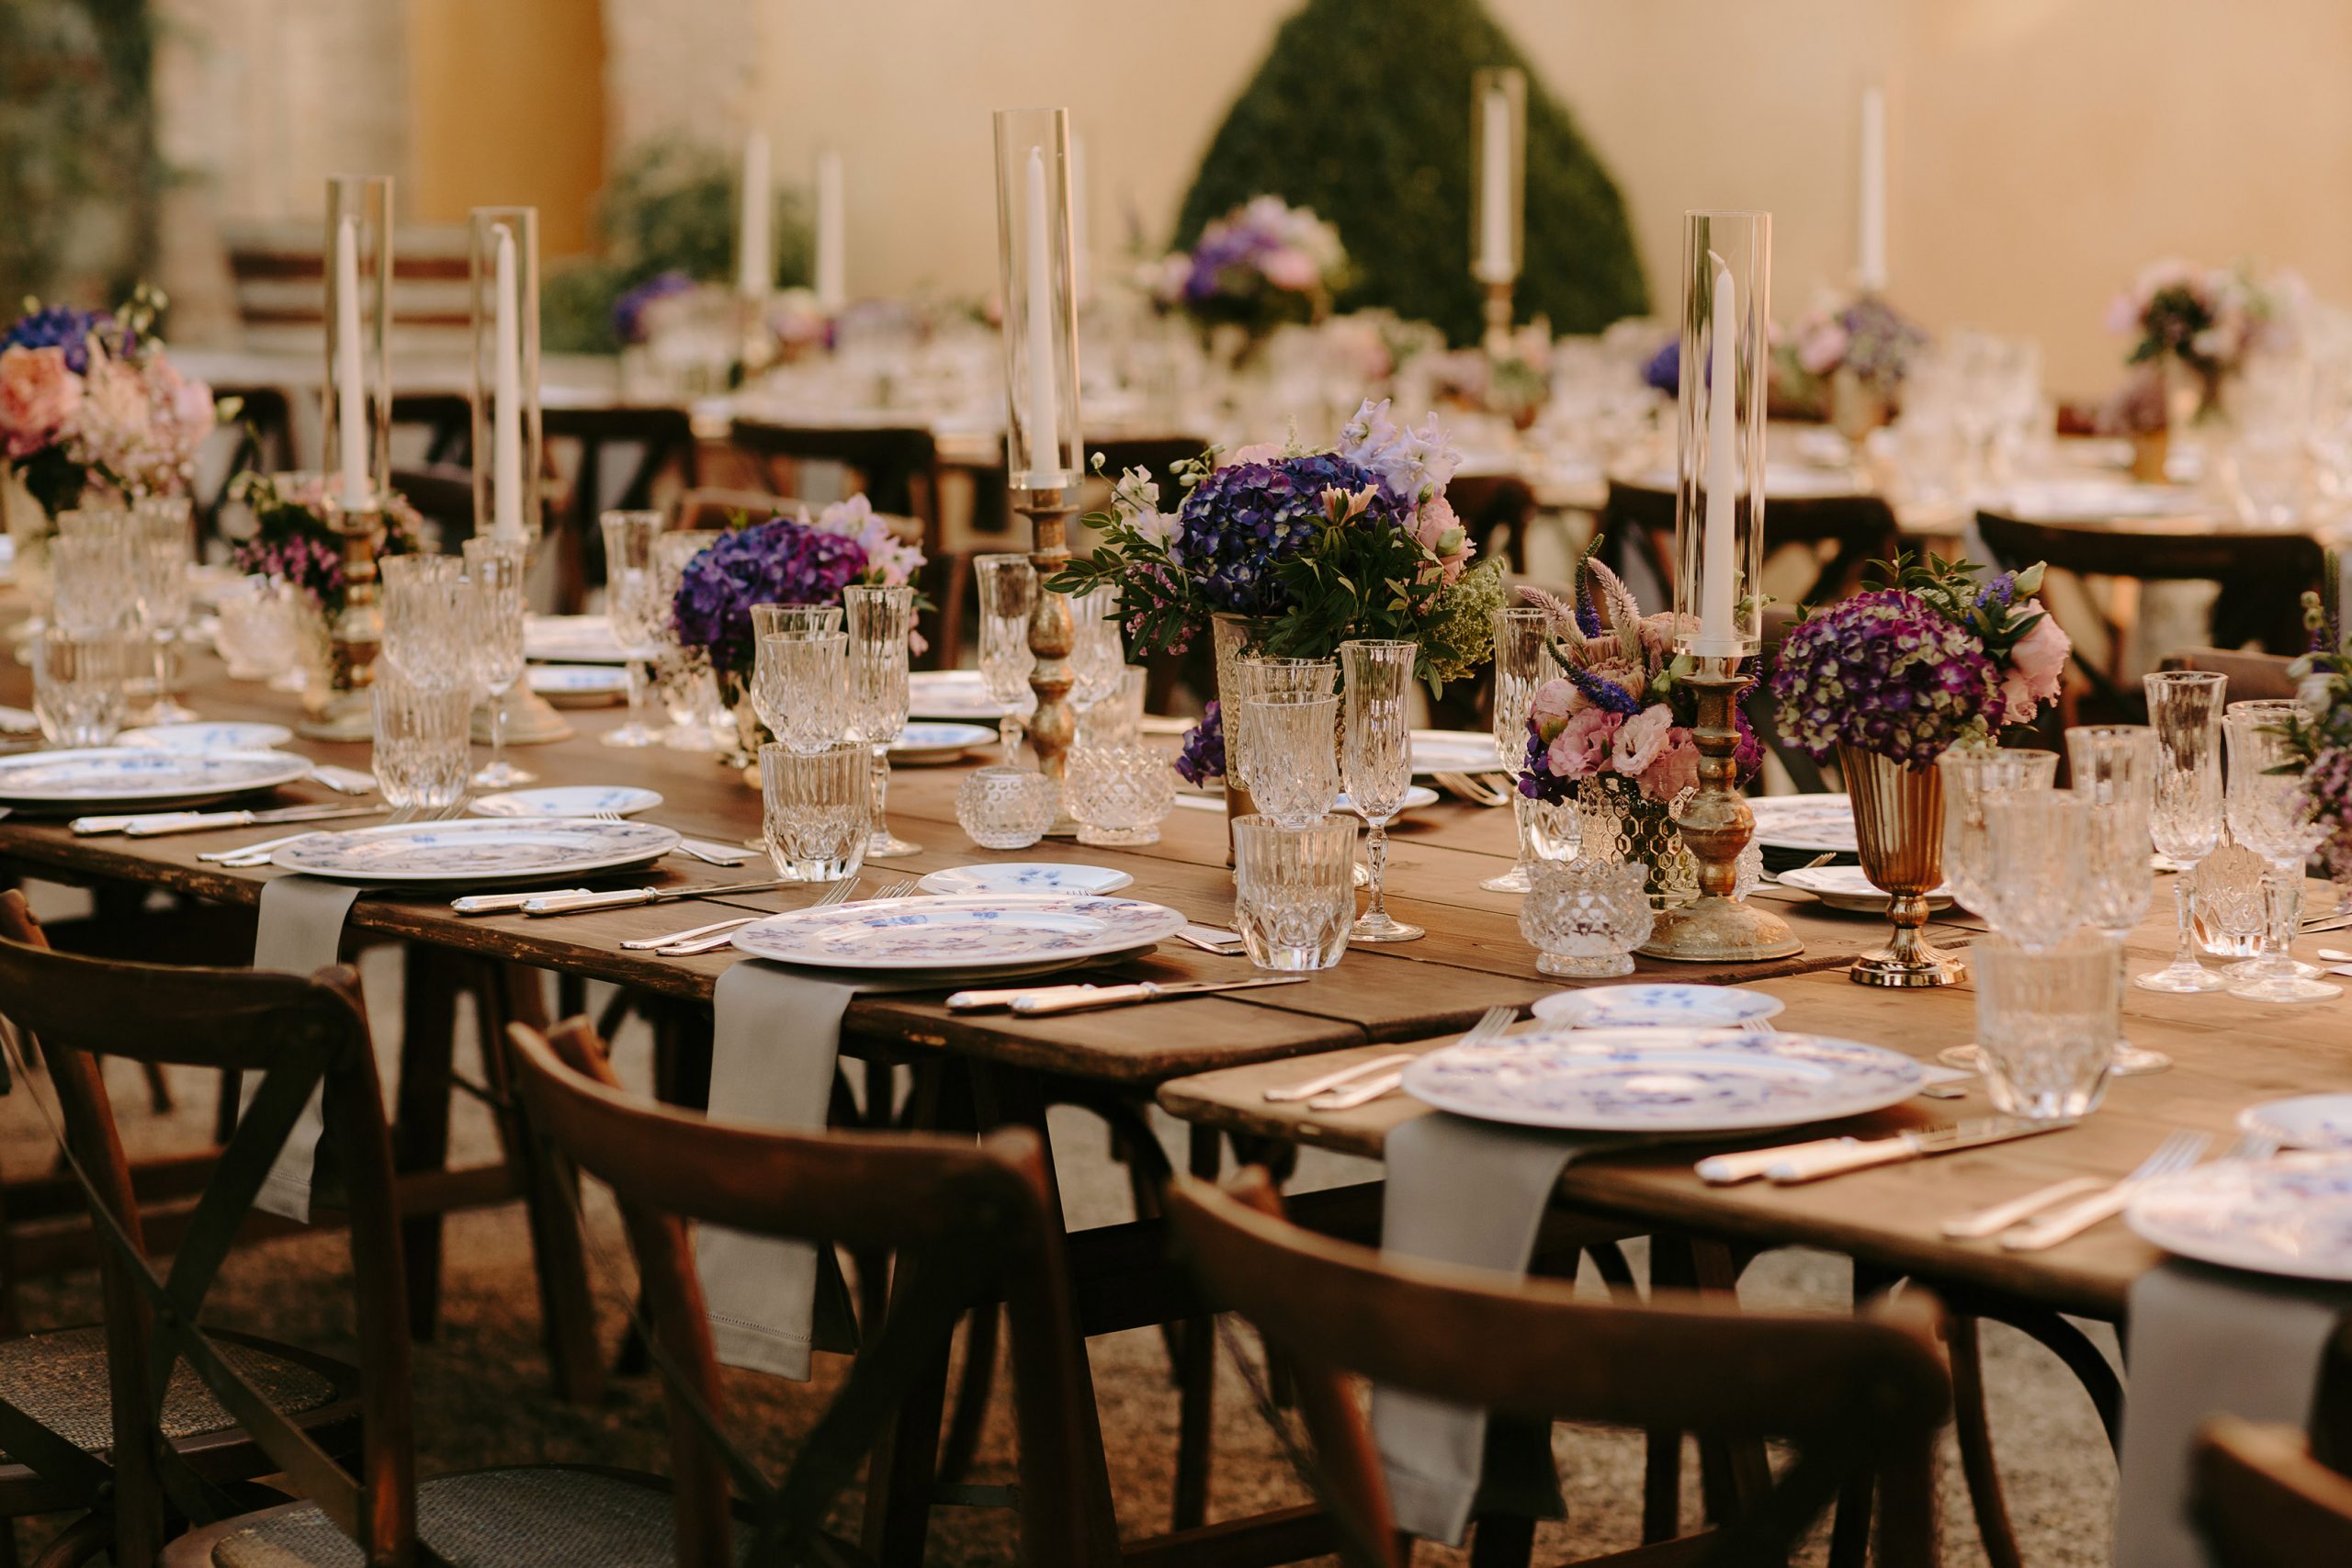 Ricevimento di matrimonio all'aperto in stile italiano, con tavoli in legno, porcellane, candele e fiori di campo